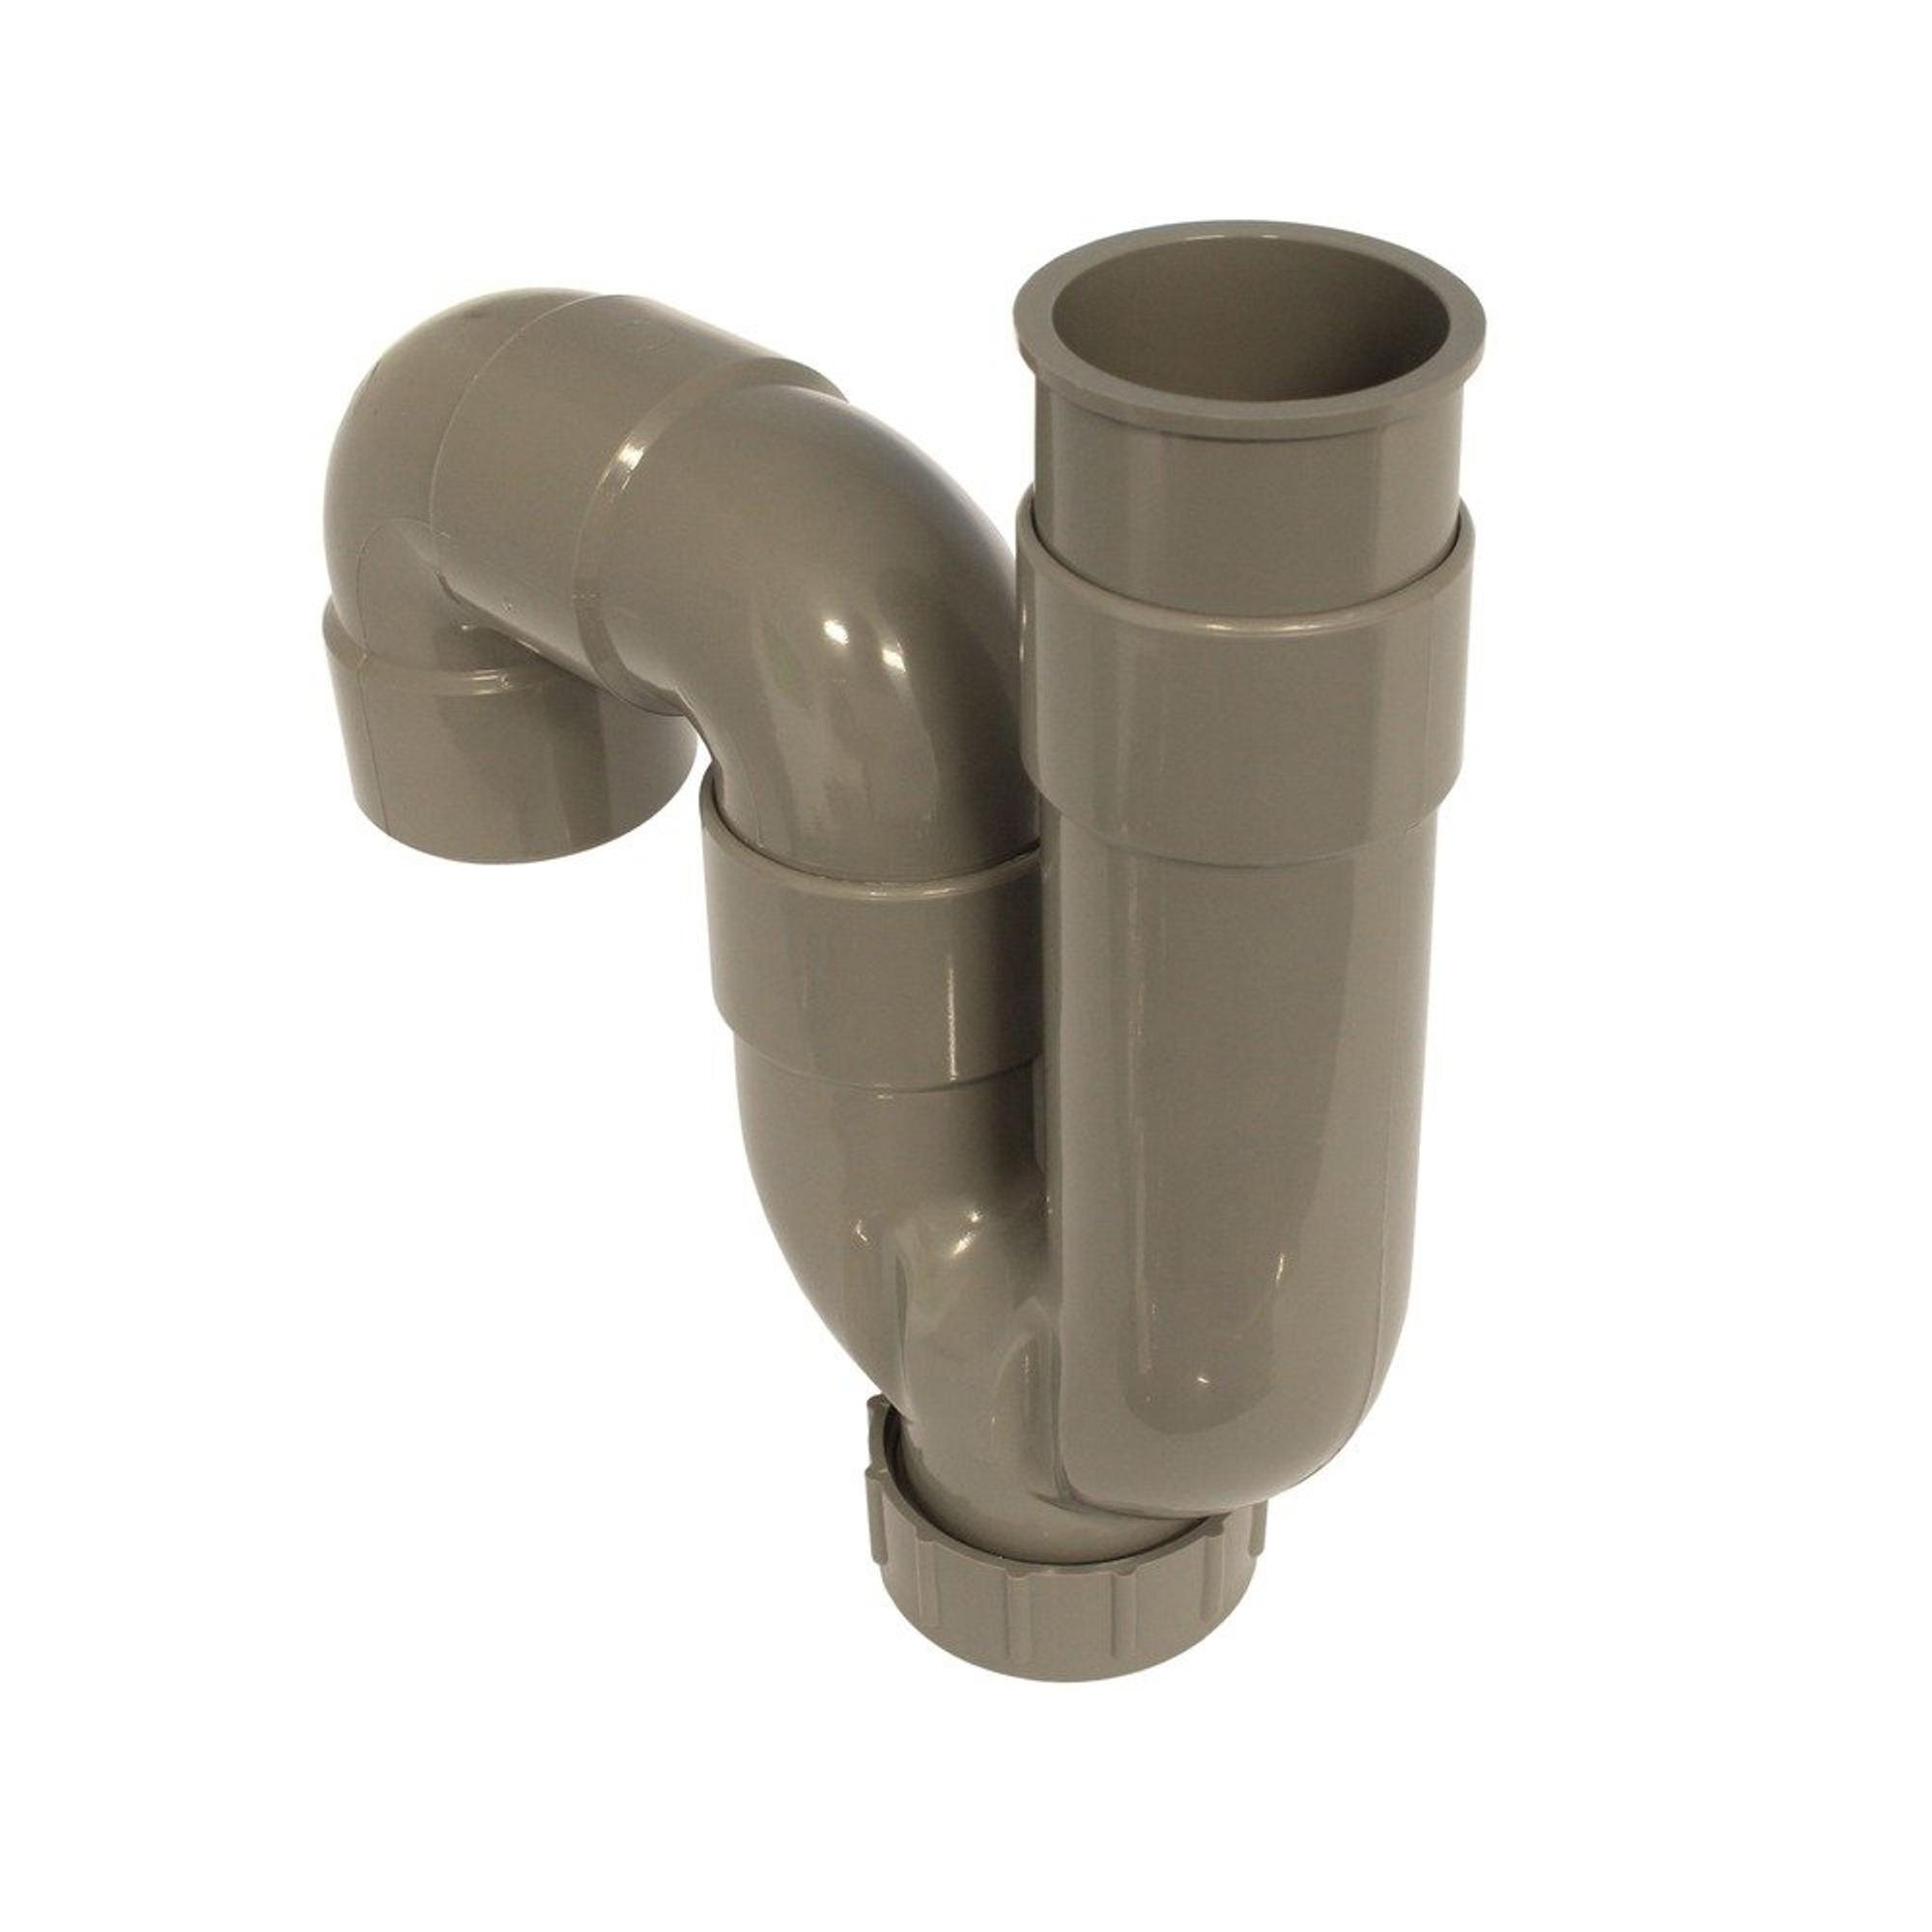 Nemo Skill Siphon pour lavabo avec tuyau d'évacuation 25cm 5/4xD32 mm sans  bonde chrome - SH-5027 